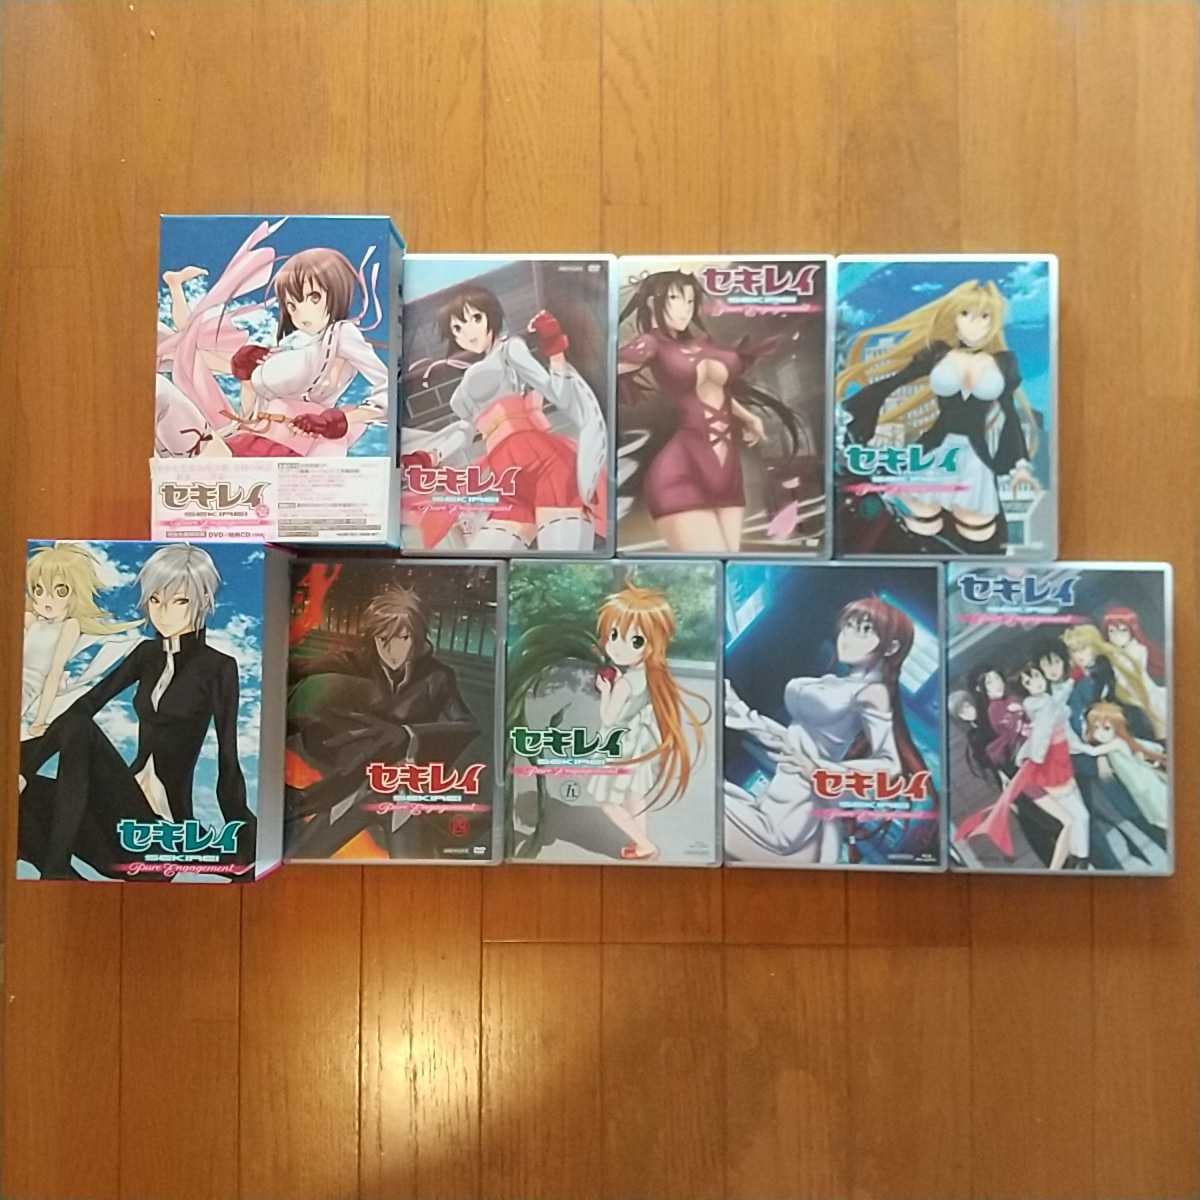 セキレイ 全6巻DVDセット〈完全生産限定版〉 - アニメ